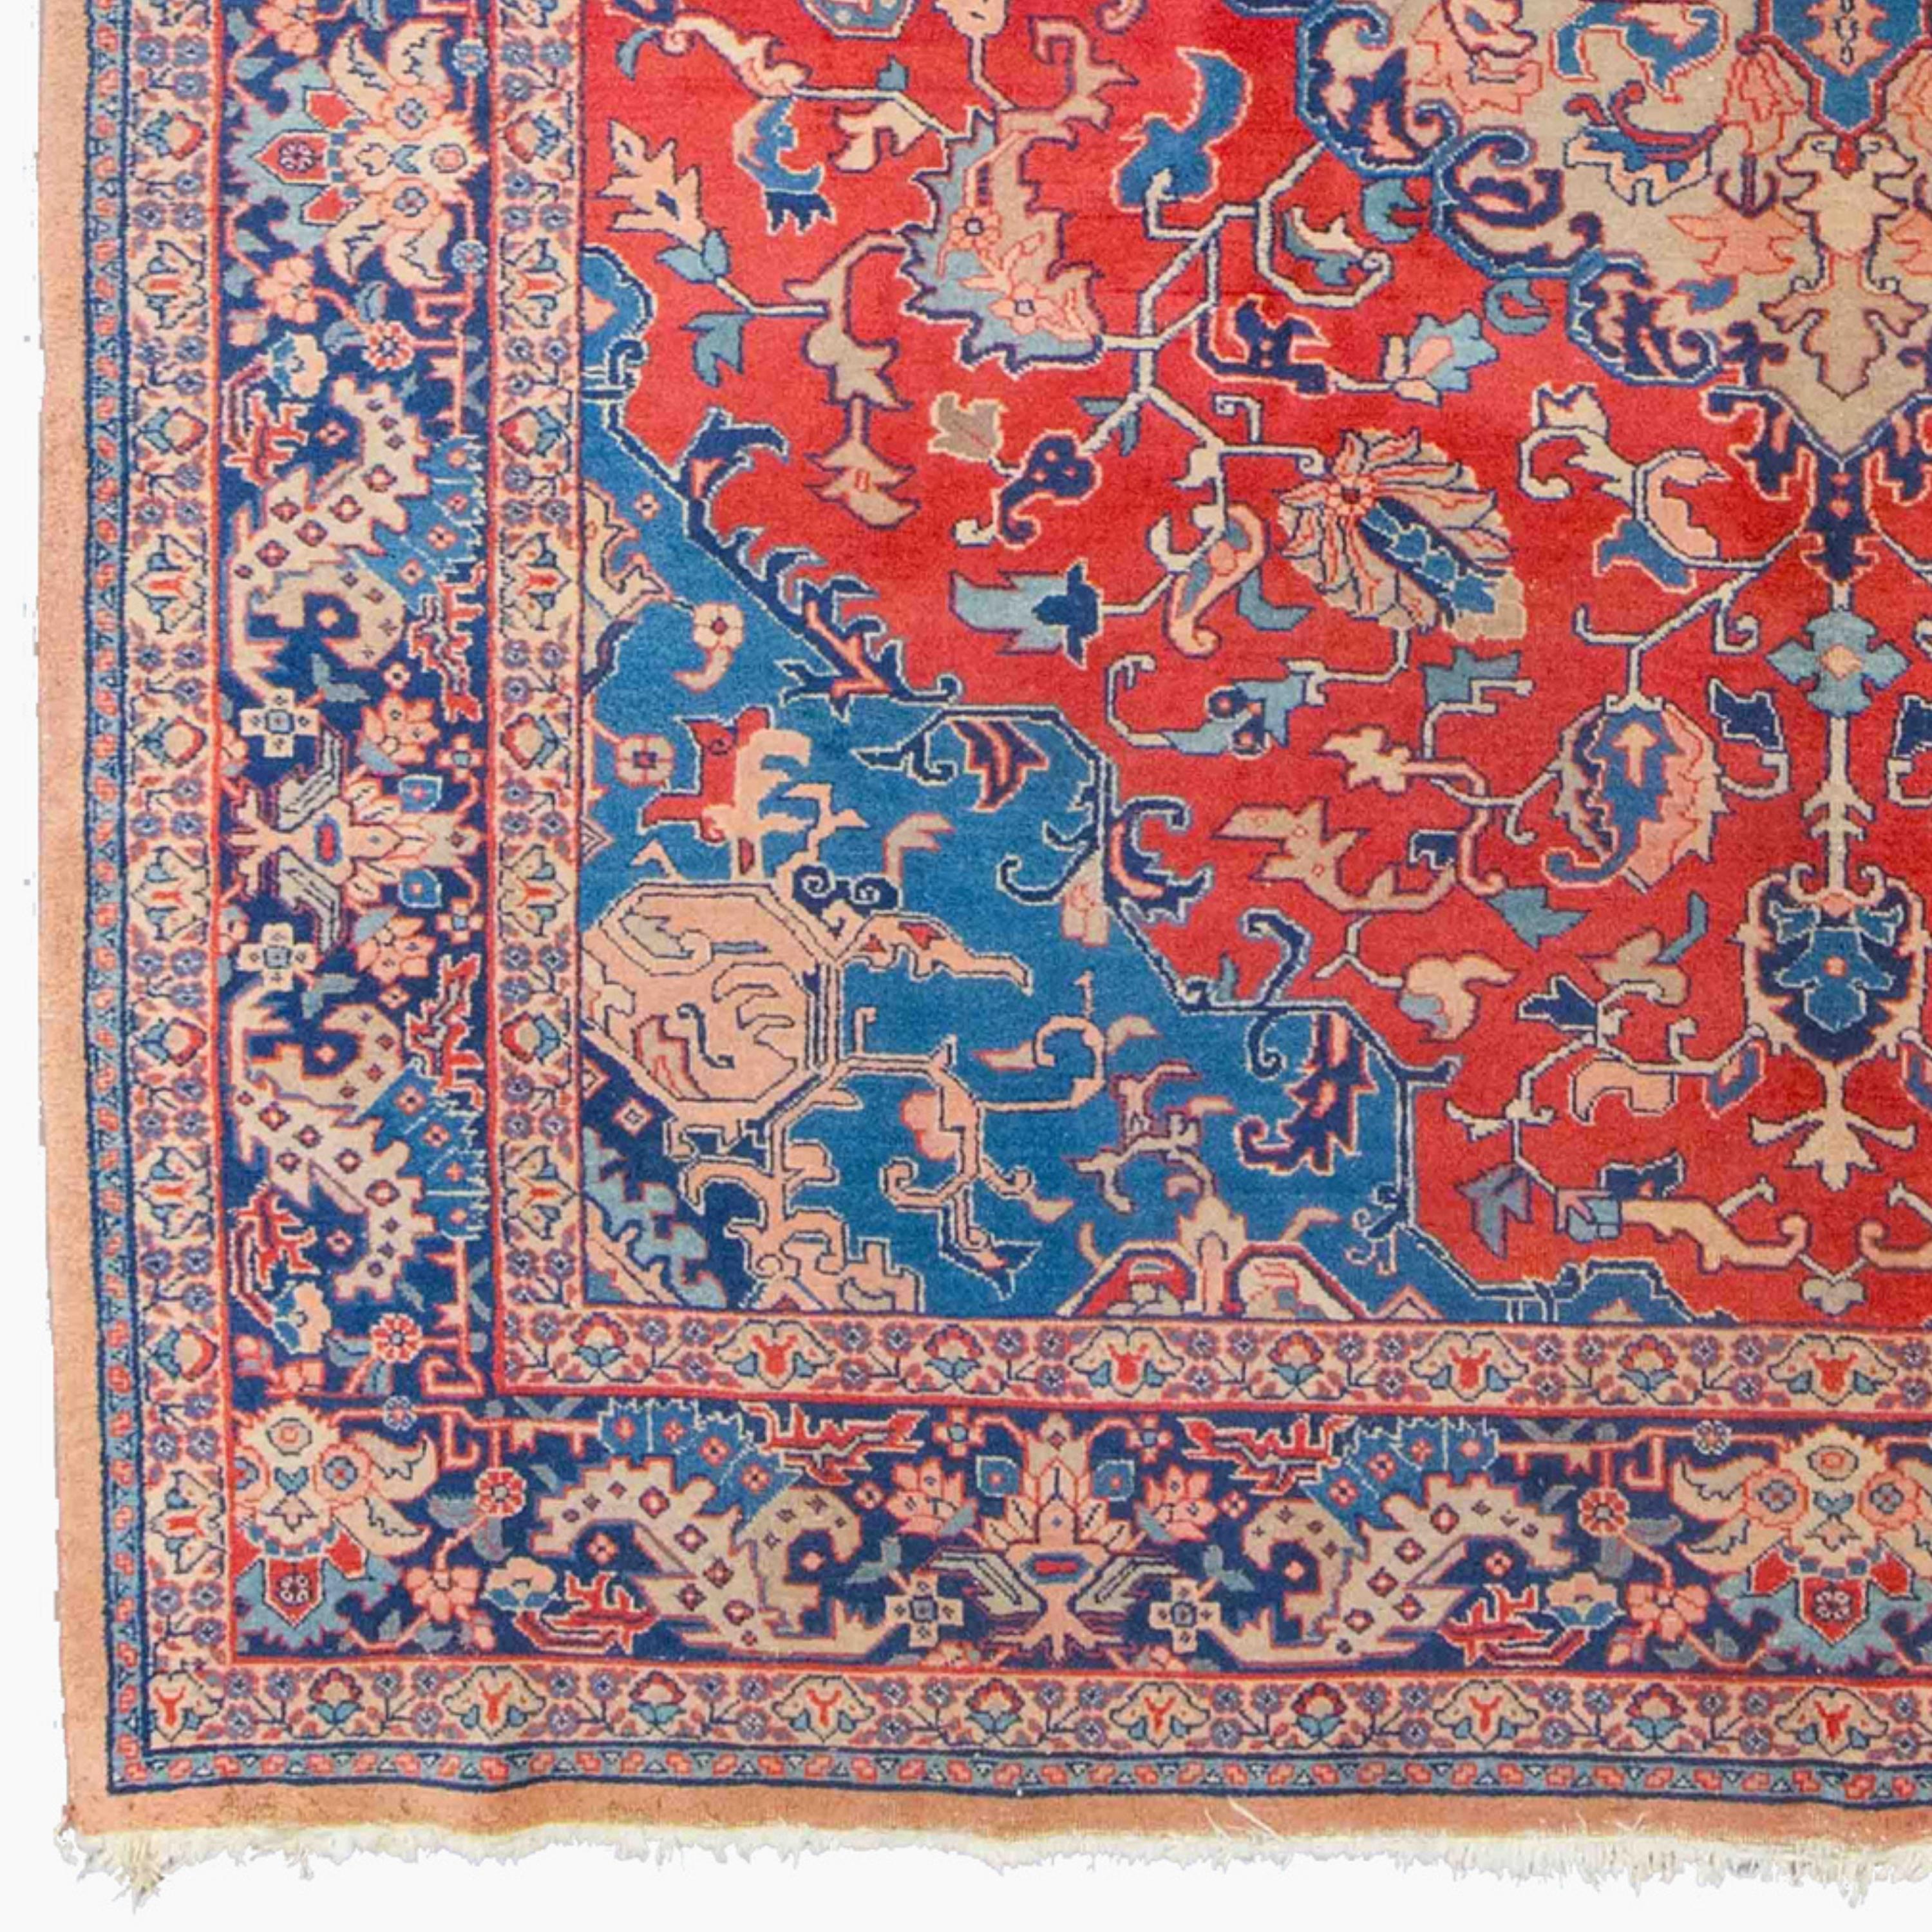 Antike Tabriz Teppich 244x334 ft (8 x 10,95 ft) Ende des 19. Jahrhunderts Tebriz Teppich in gutem Zustand

Ab Mitte des 19. Jahrhunderts erlebte die kommerzielle Teppichproduktion in Aserbaidschan einen Aufschwung, und Täbris wurde zu einem der